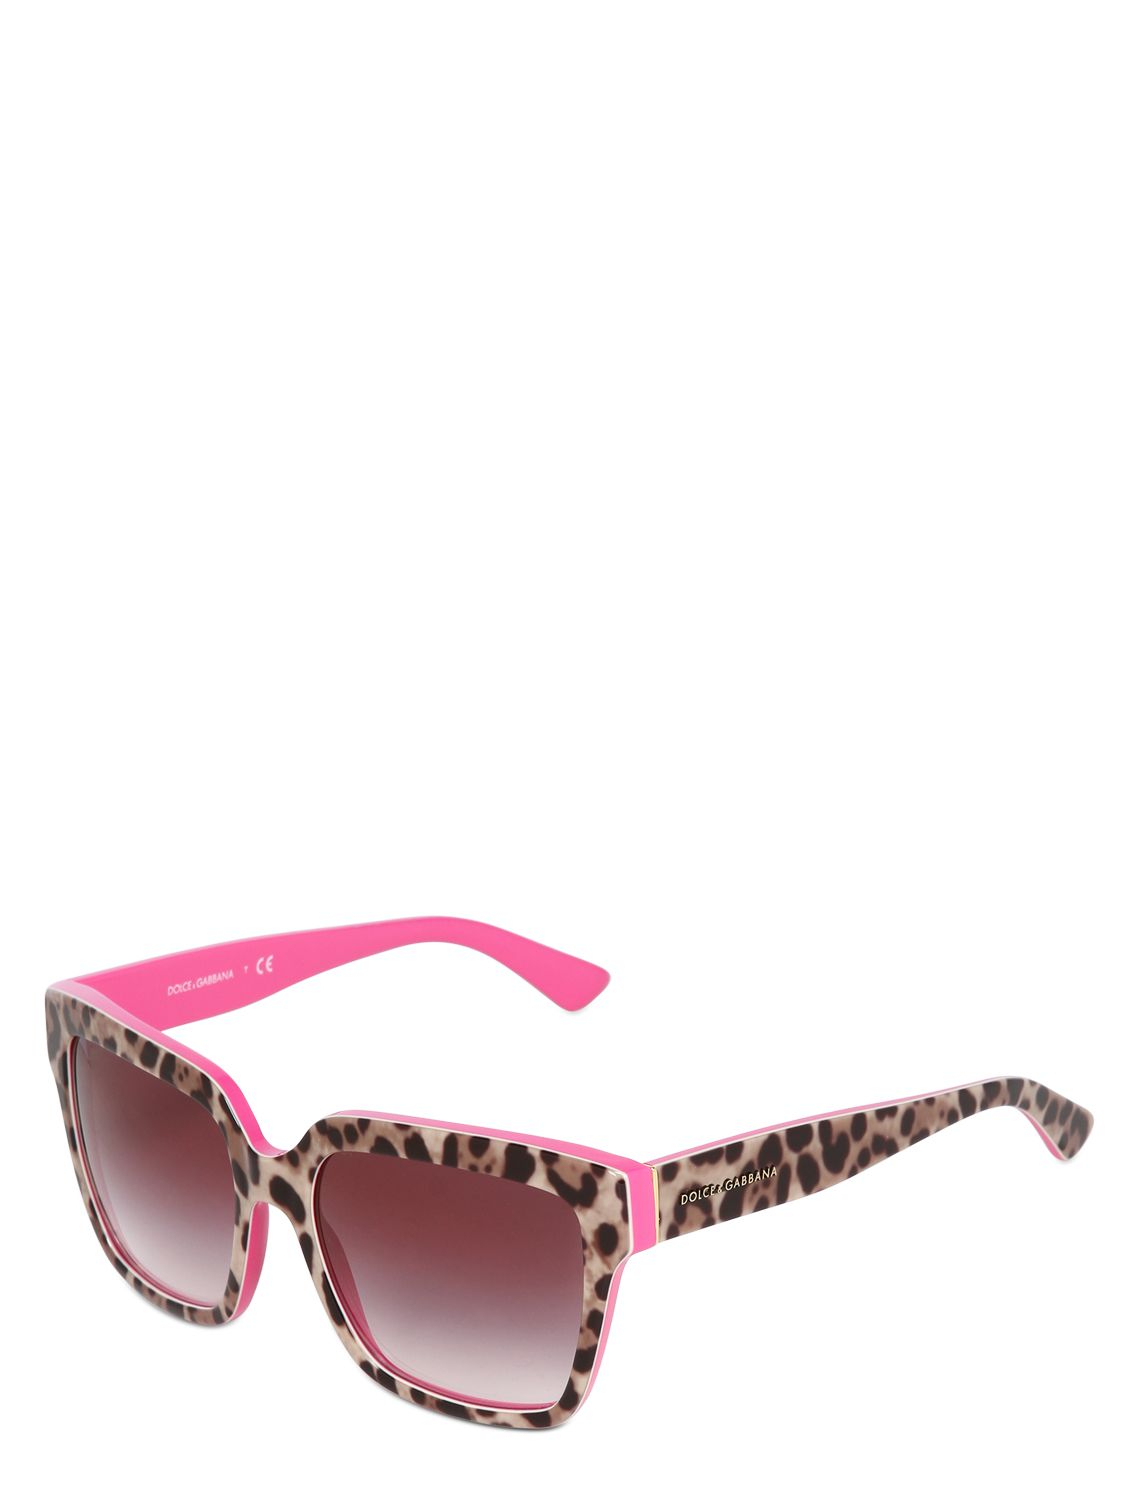 Dolce & Gabbana Squared Leopard Printed Sunglasses in Fuchsia (Pink) - Lyst